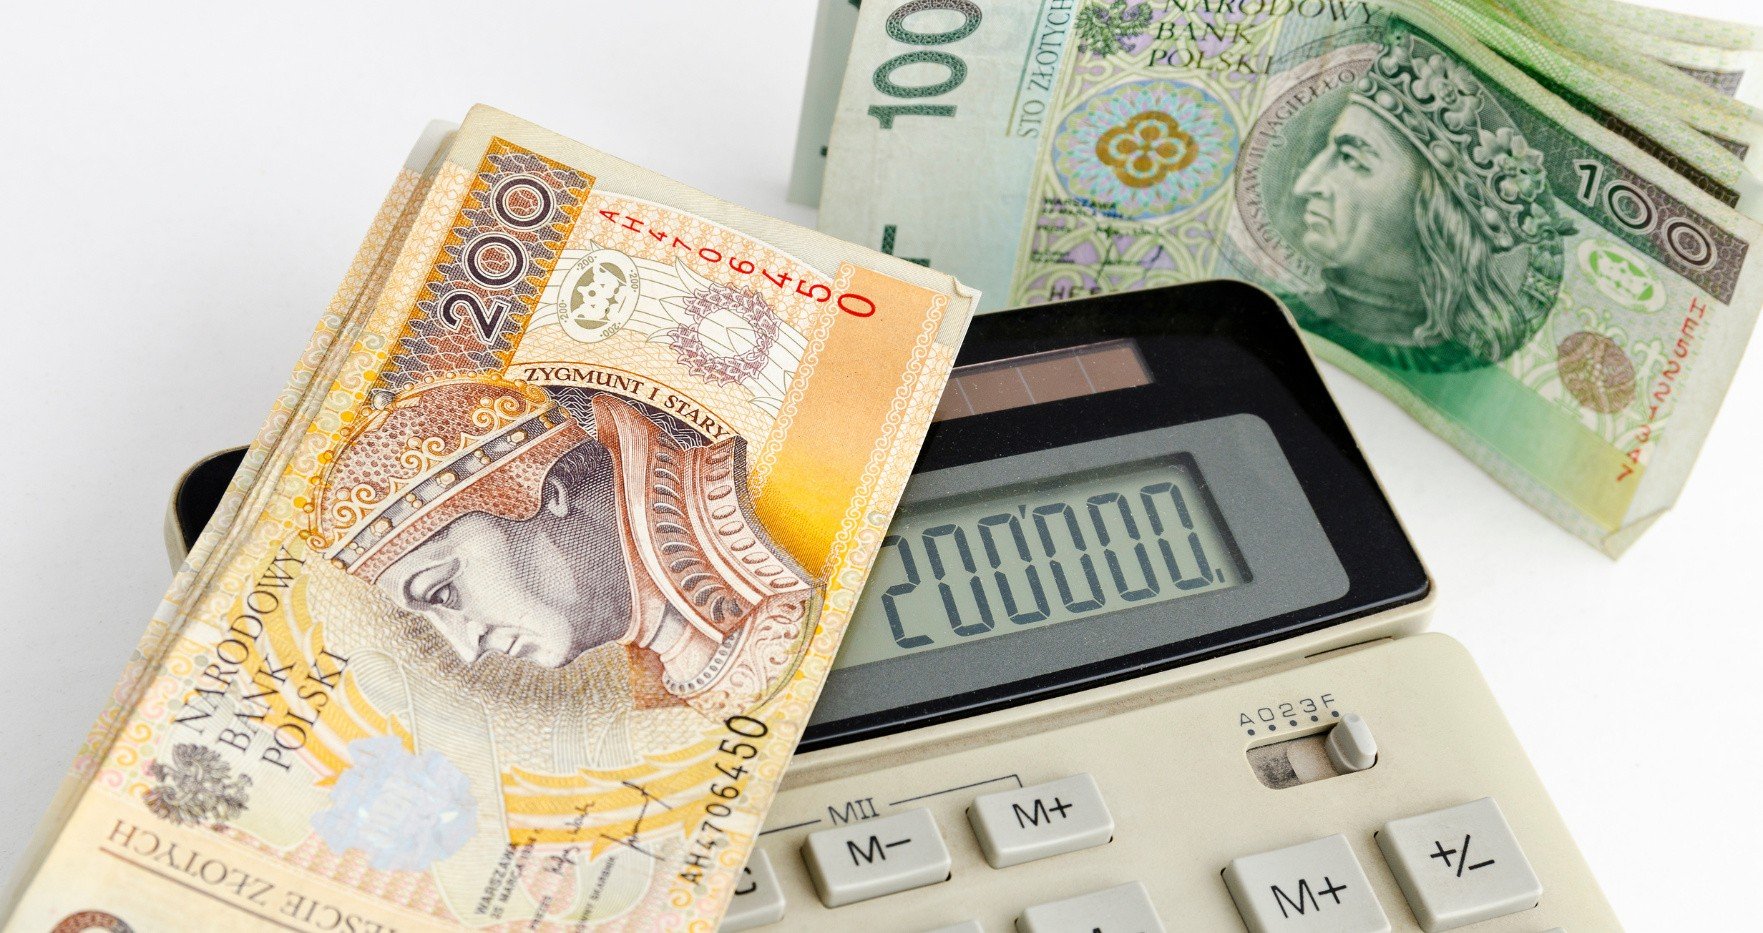 Los pensionistas recibirán este dinero en julio de 2023. La pensión puede aumentar hasta 500 PLN